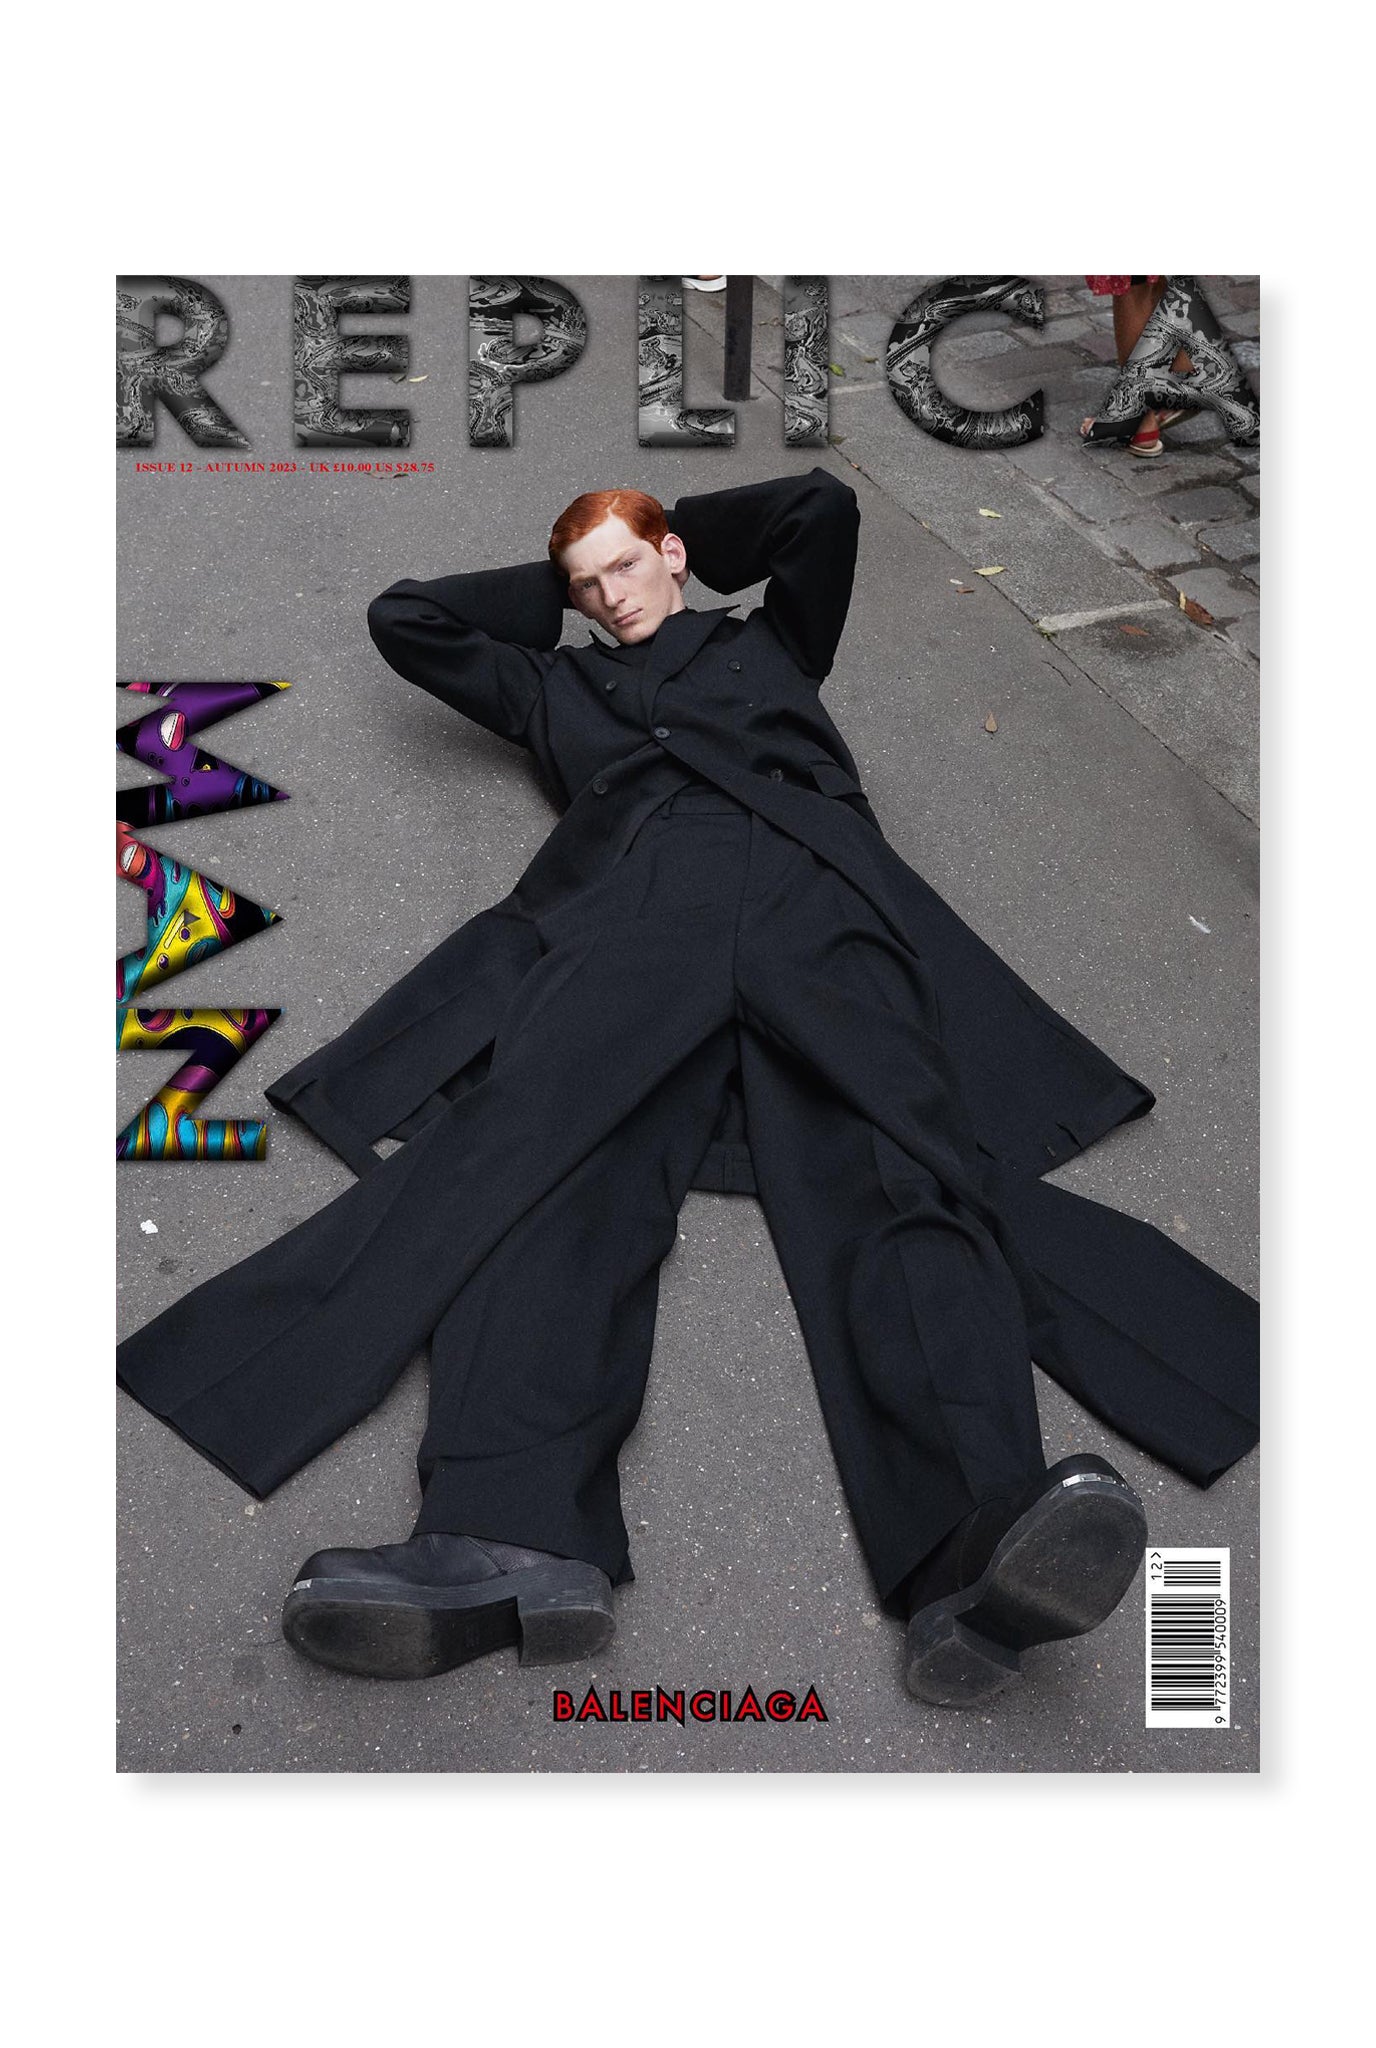 Replica, Issue 12